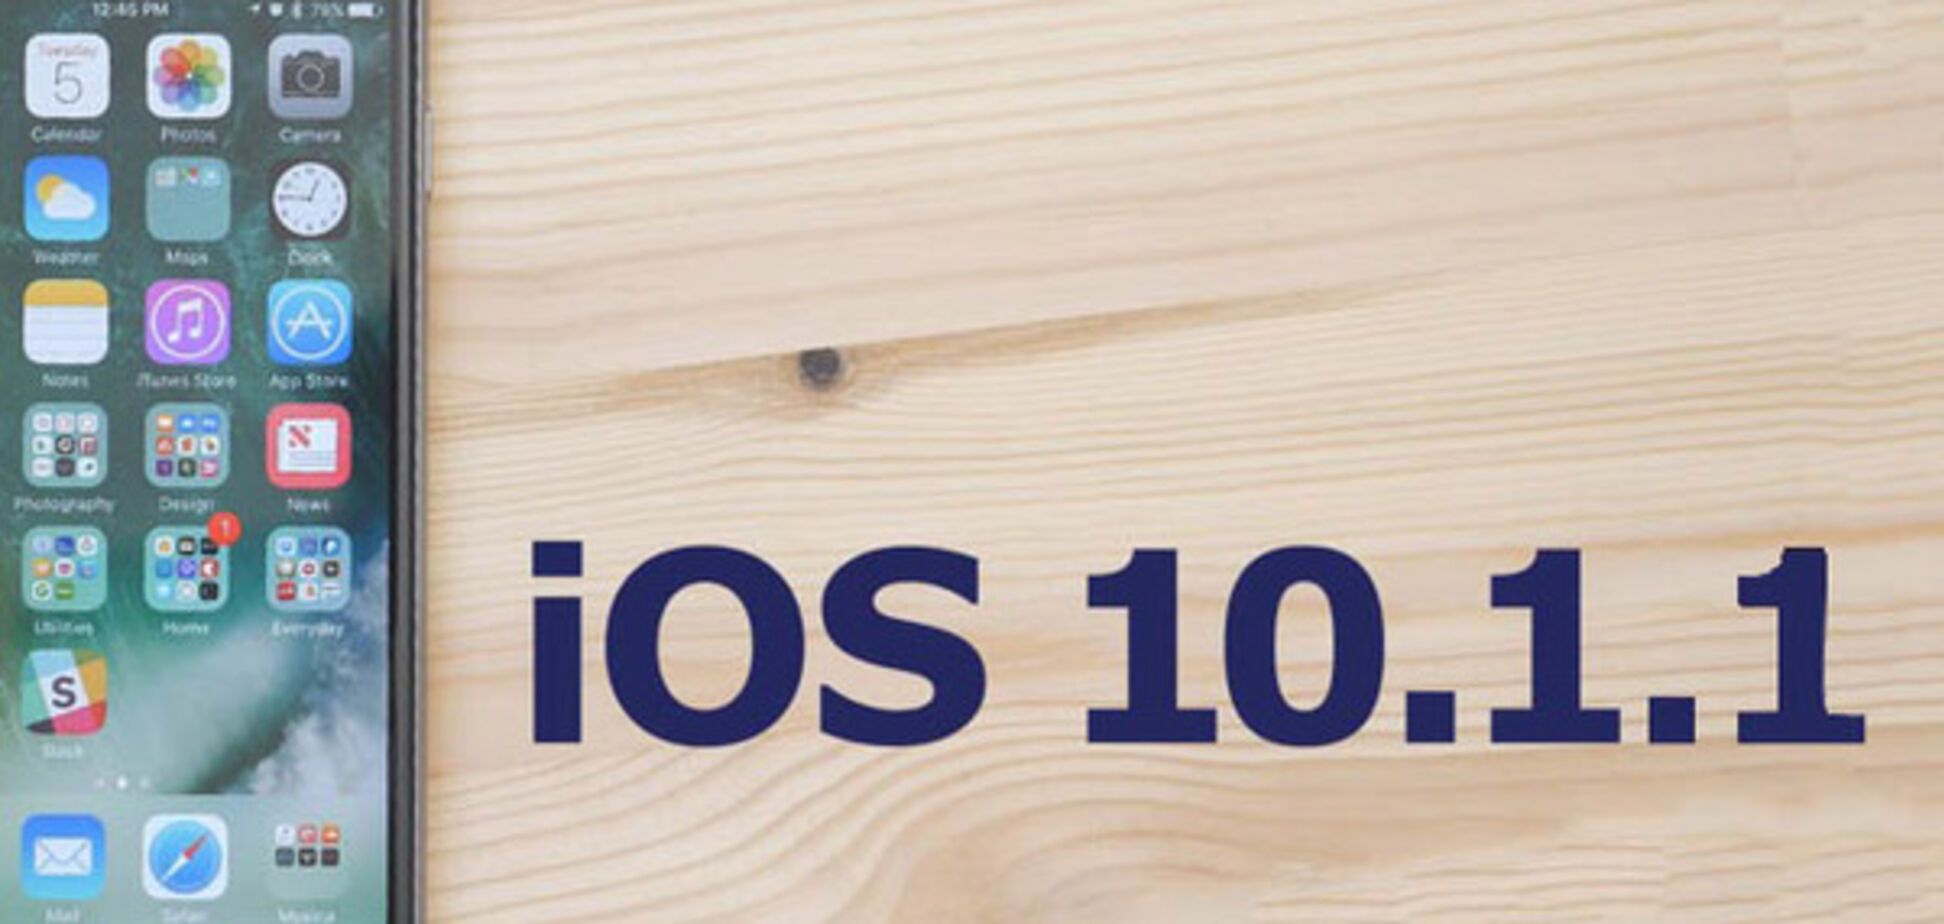 iPhone с iOS 10.1.1